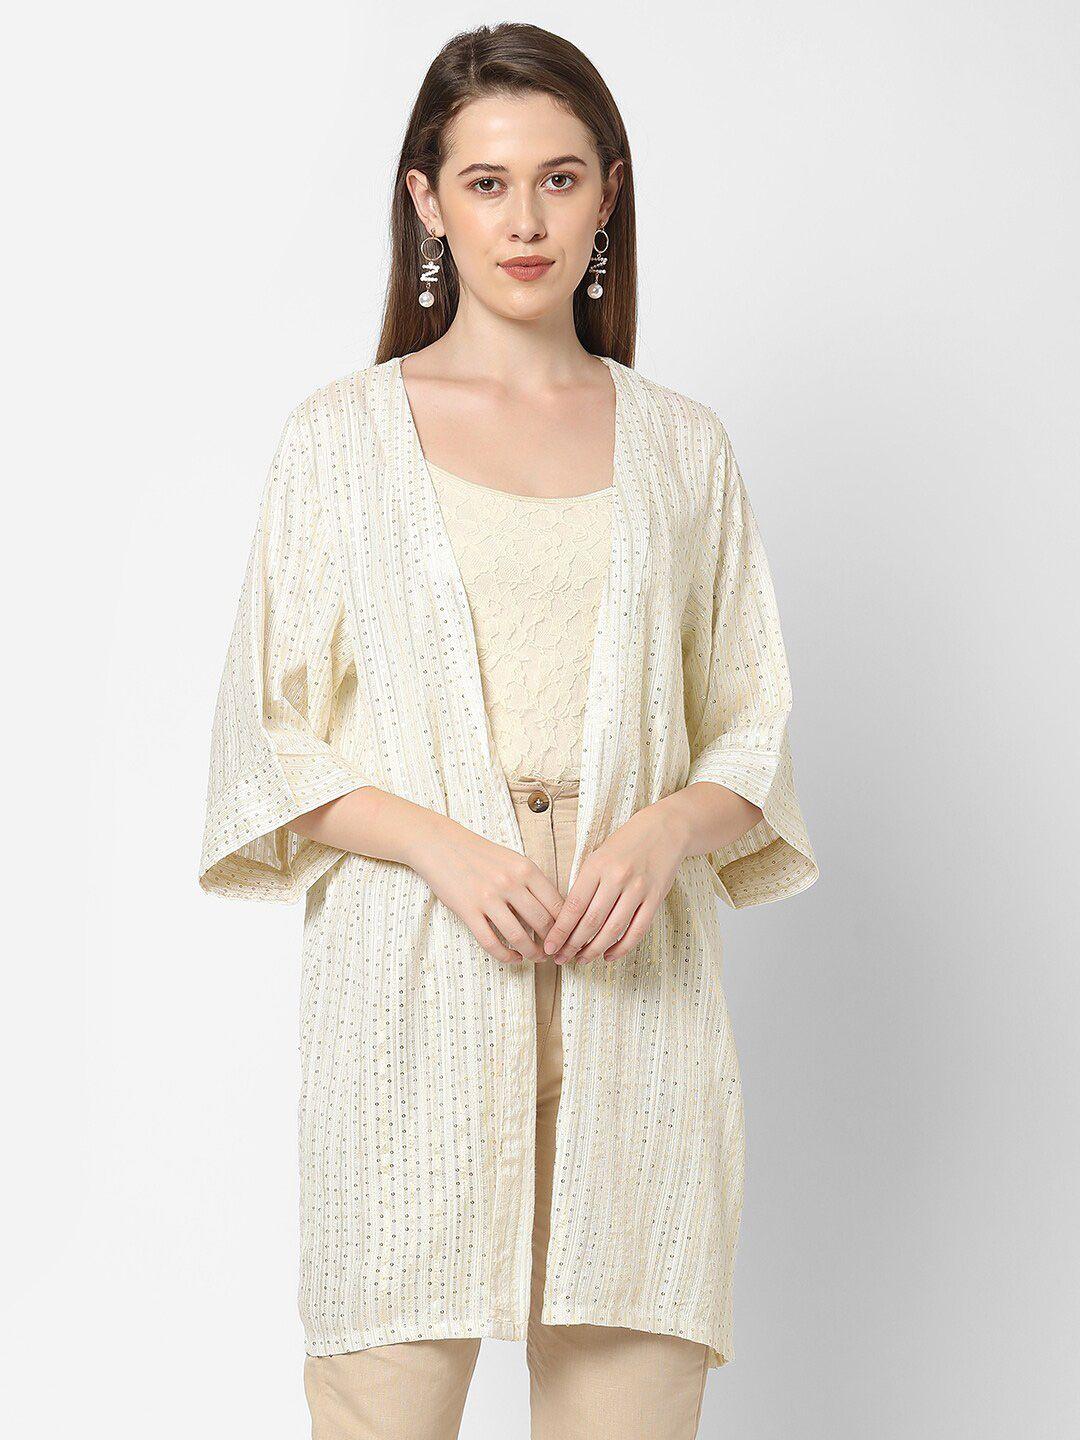 cloth haus india women off white self design kimono shrug